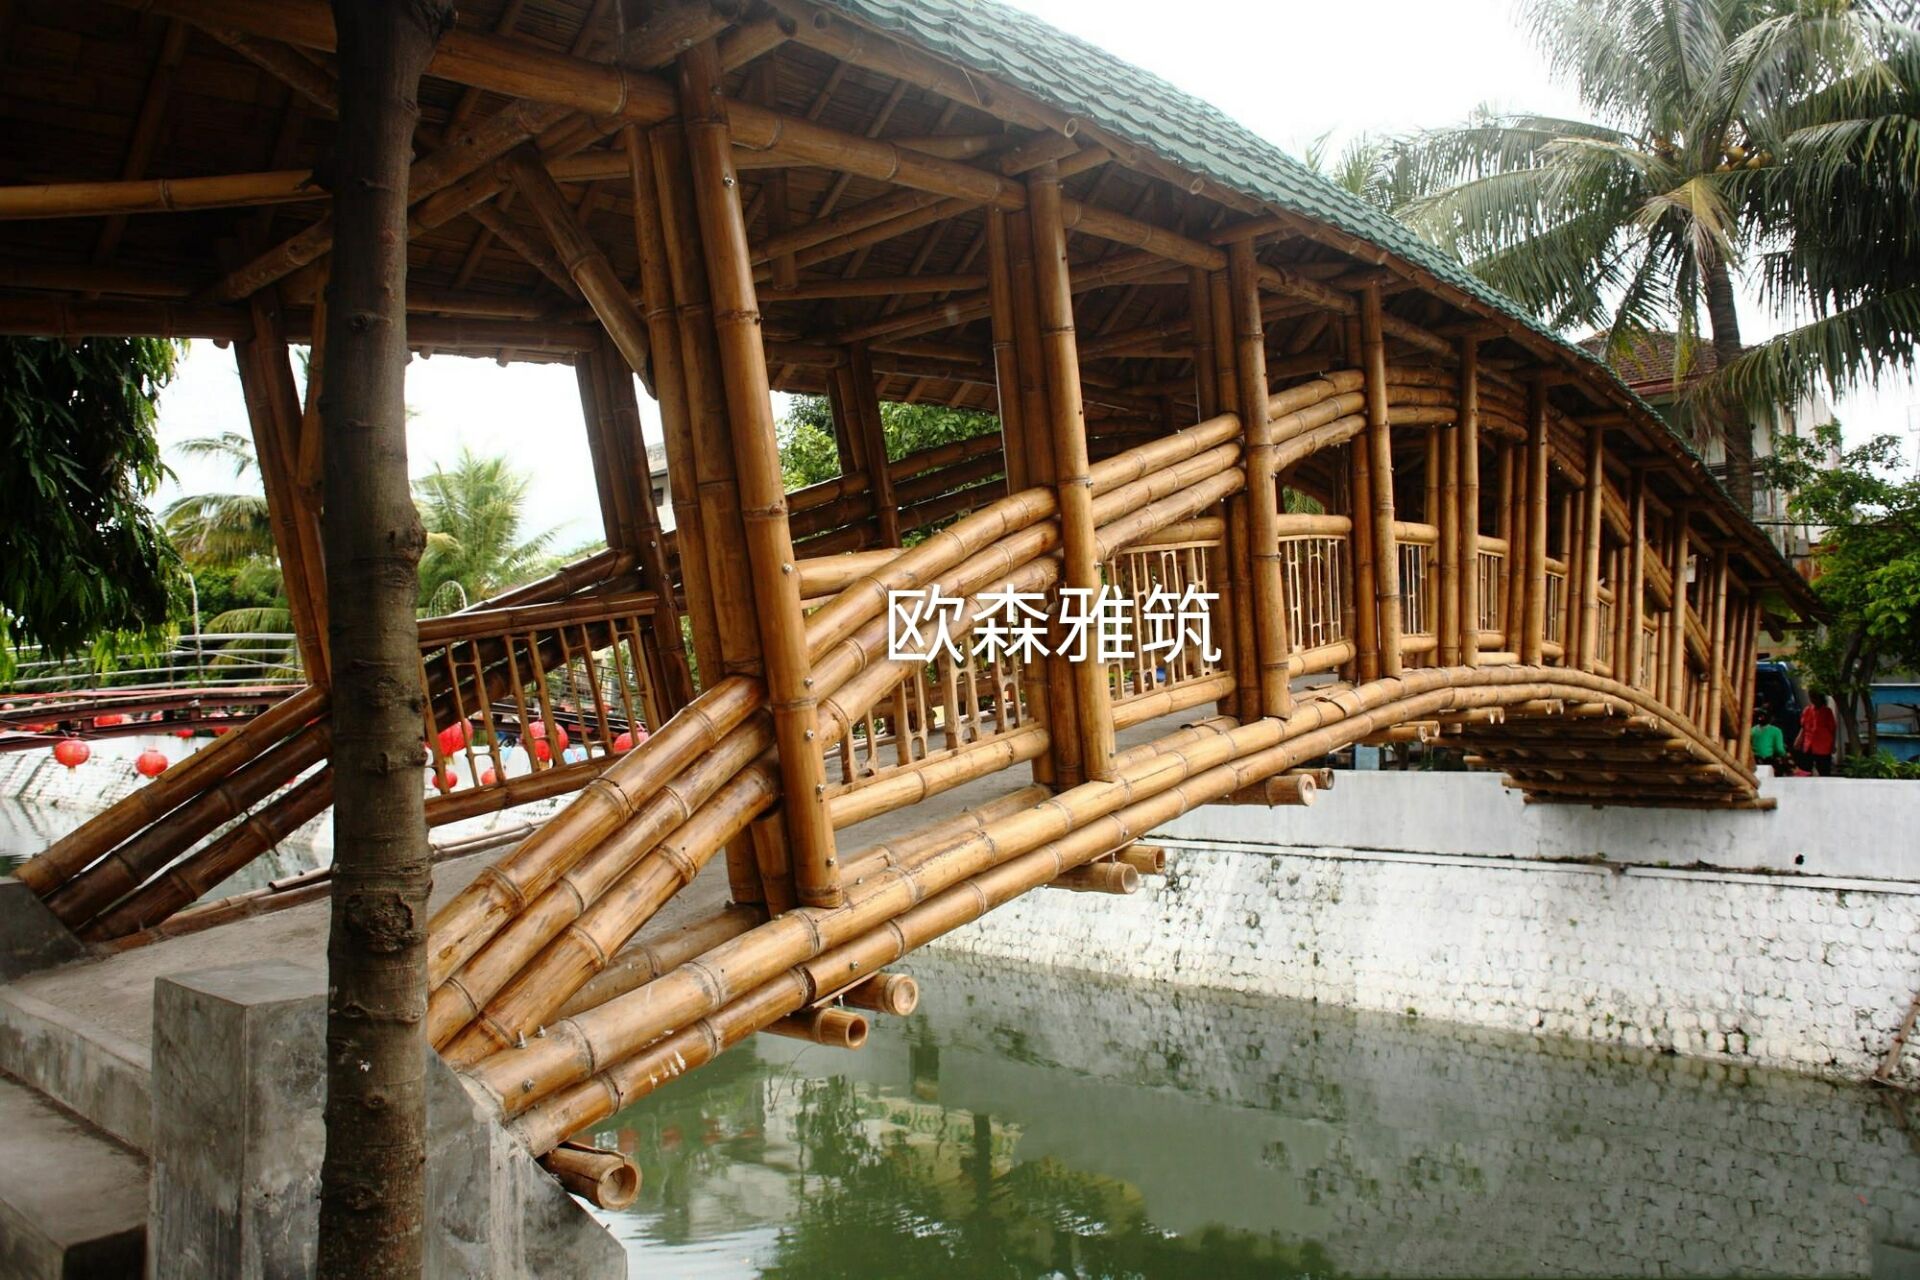 国外经典特色竹结构建筑 - 创意竹子建筑 - 特色竹编景观建筑 - 竹结构 -竹装饰 -竹建